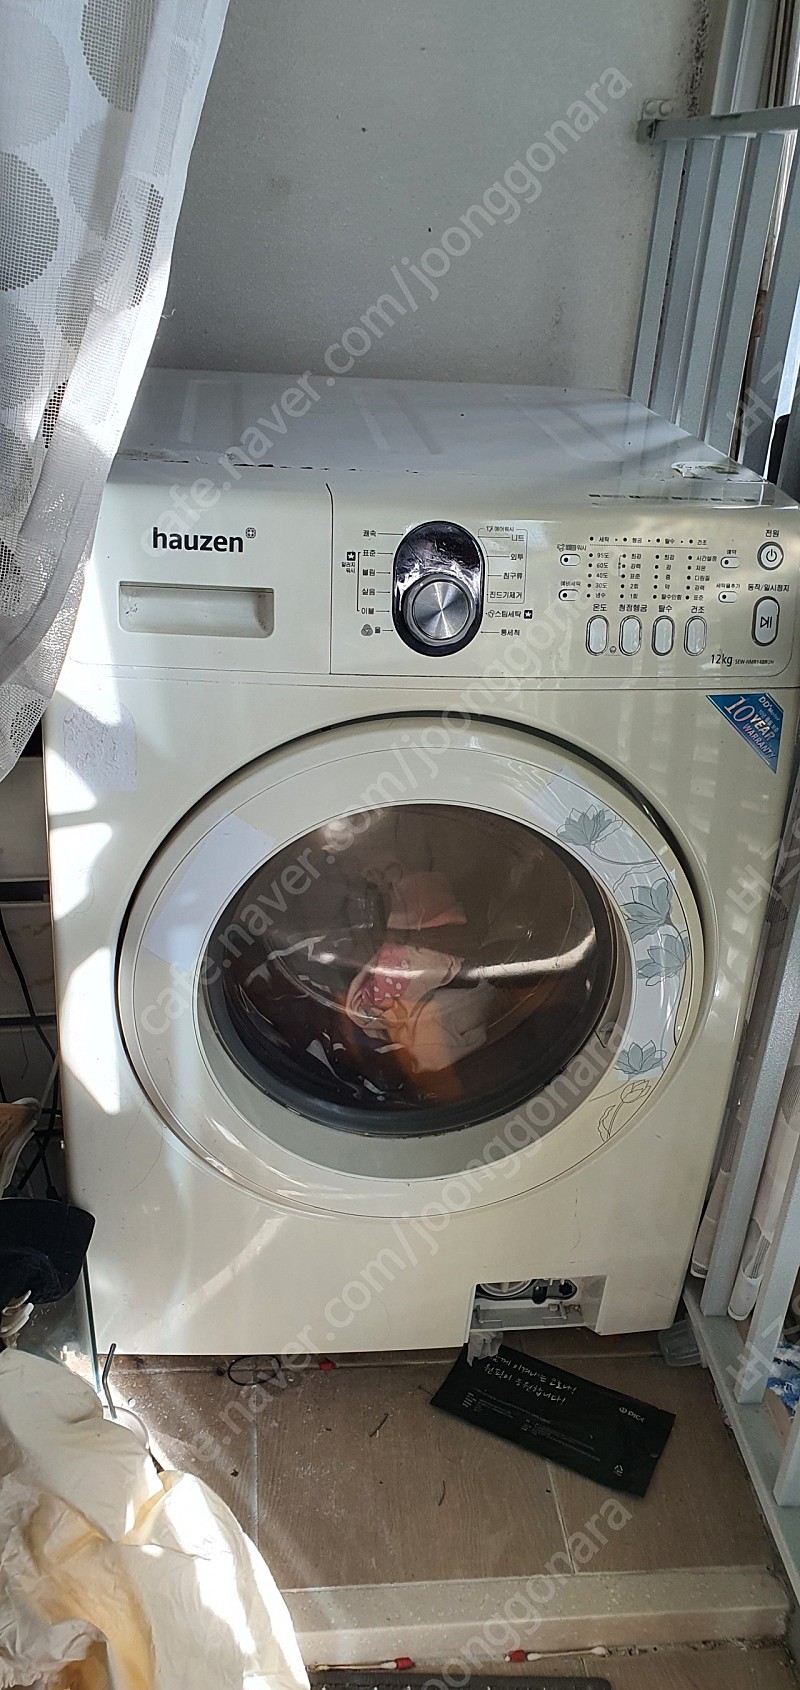 삼성 하우젠 드럼세탁기 세탁용량 12KG(SEW-HMR148RUH)